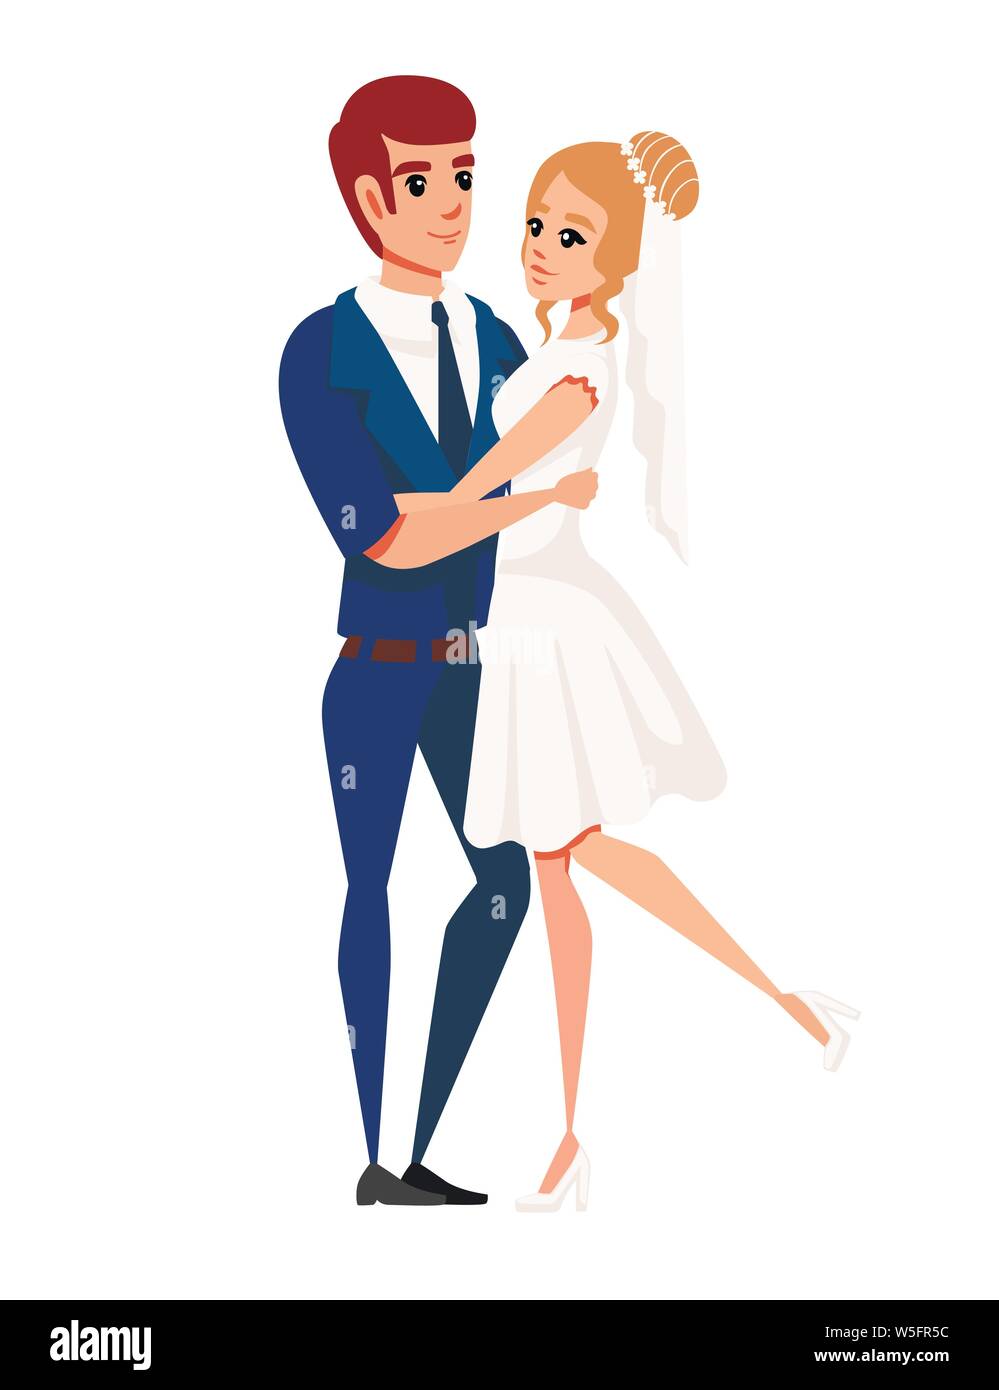 L'homme et de la femme en mariage amour hugging couple cartoon character design télévision vector illustration sur fond blanc. Illustration de Vecteur